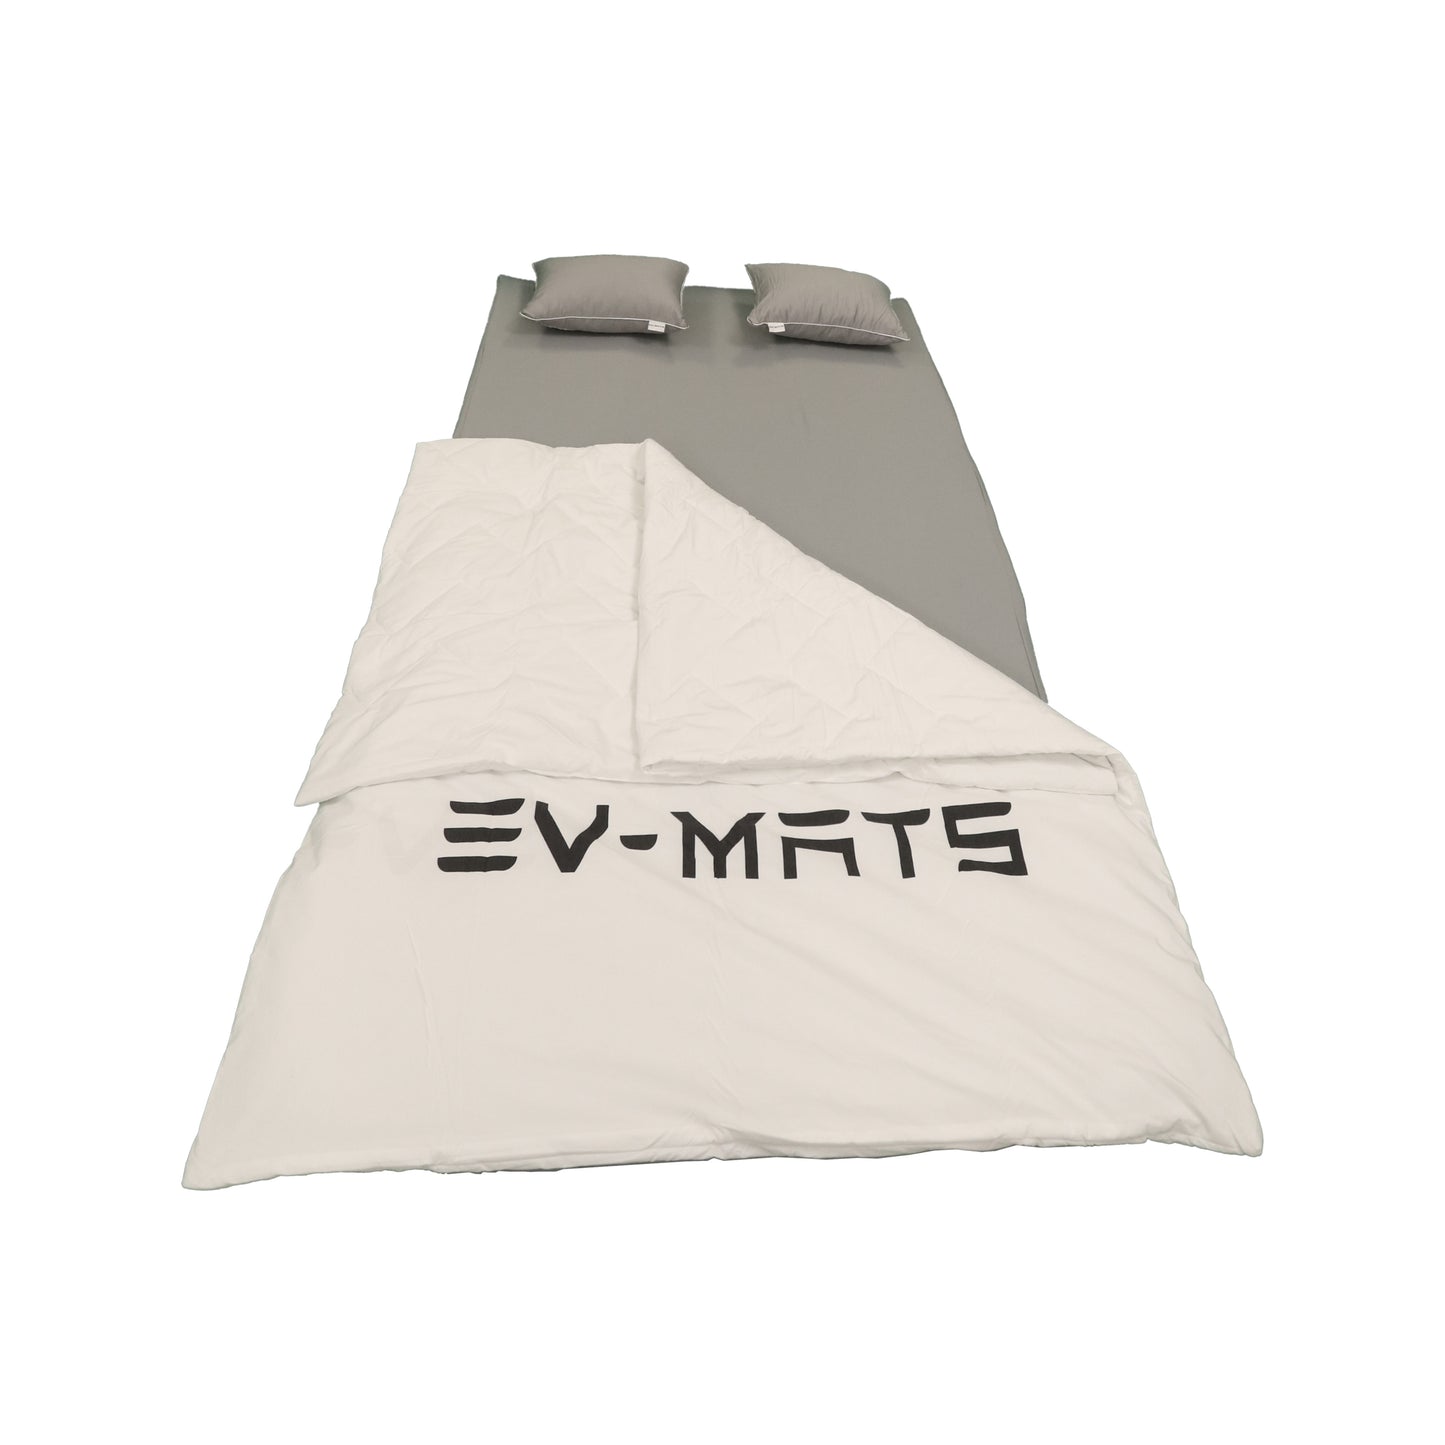 EV-MATS Basic CAMP SET dla Tesla Model Y zawiera materac Tesli, wodoodporną torbę, która mieści się w tylnej klapie Tesla Model Y, prześcieradło, kołdrę, 2 poduszki i poszewkę na poduszkę